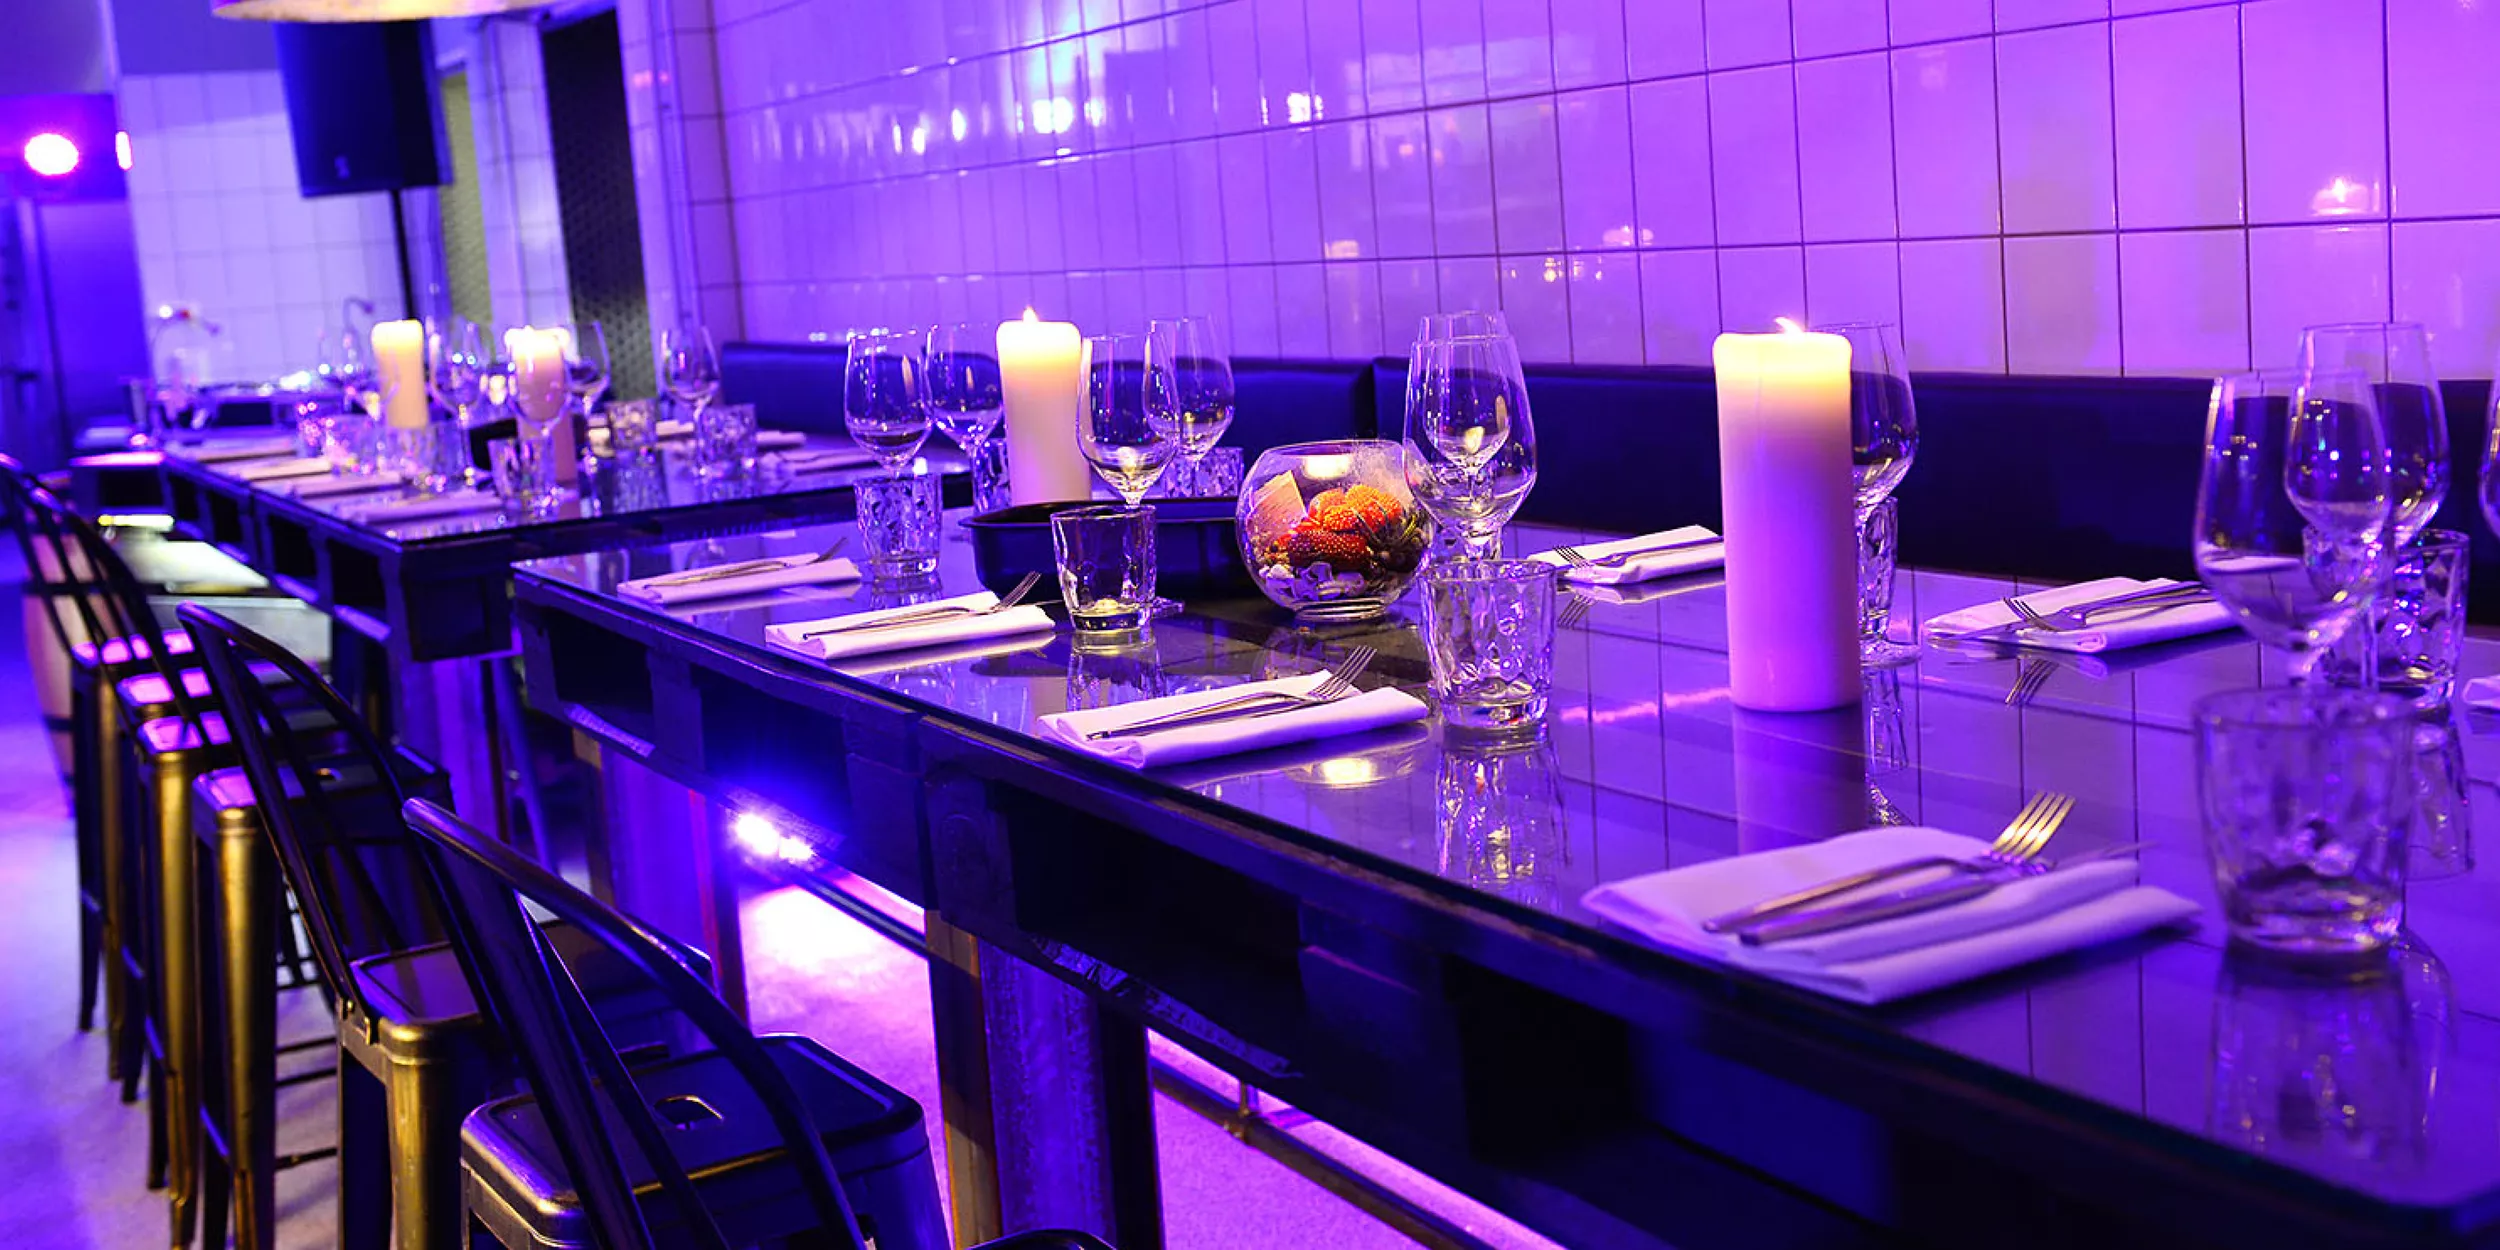 Gedeckter Paletten-Tisch mit Glasplatte, Gedecke mit Besteck, Gläsern und Blumendekoration in einer stylisch lila beleuchteten Hotelküche.